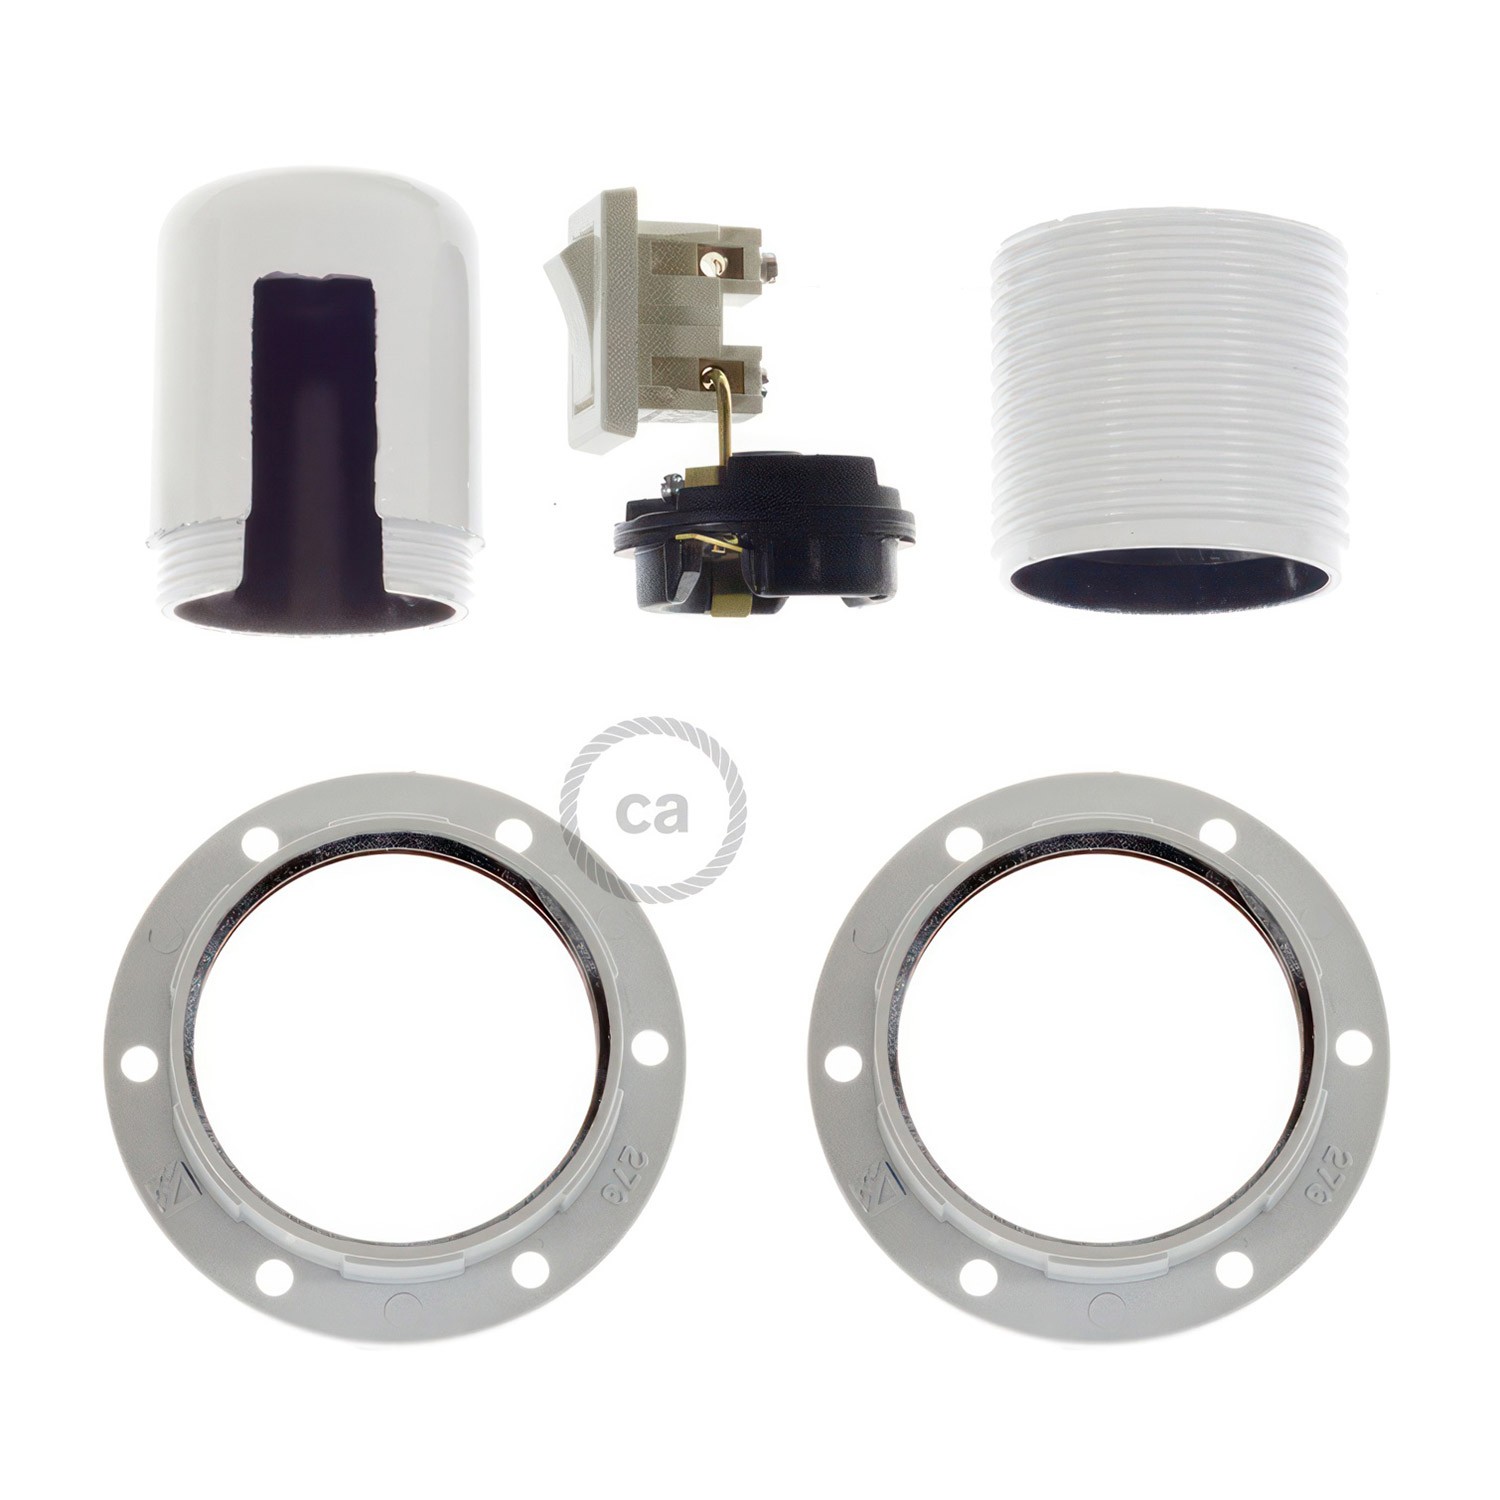 E27-Lampenfassungs-Kit aus Bakelit mit Doppelklemmring und Kippschalter für Lampenschirme